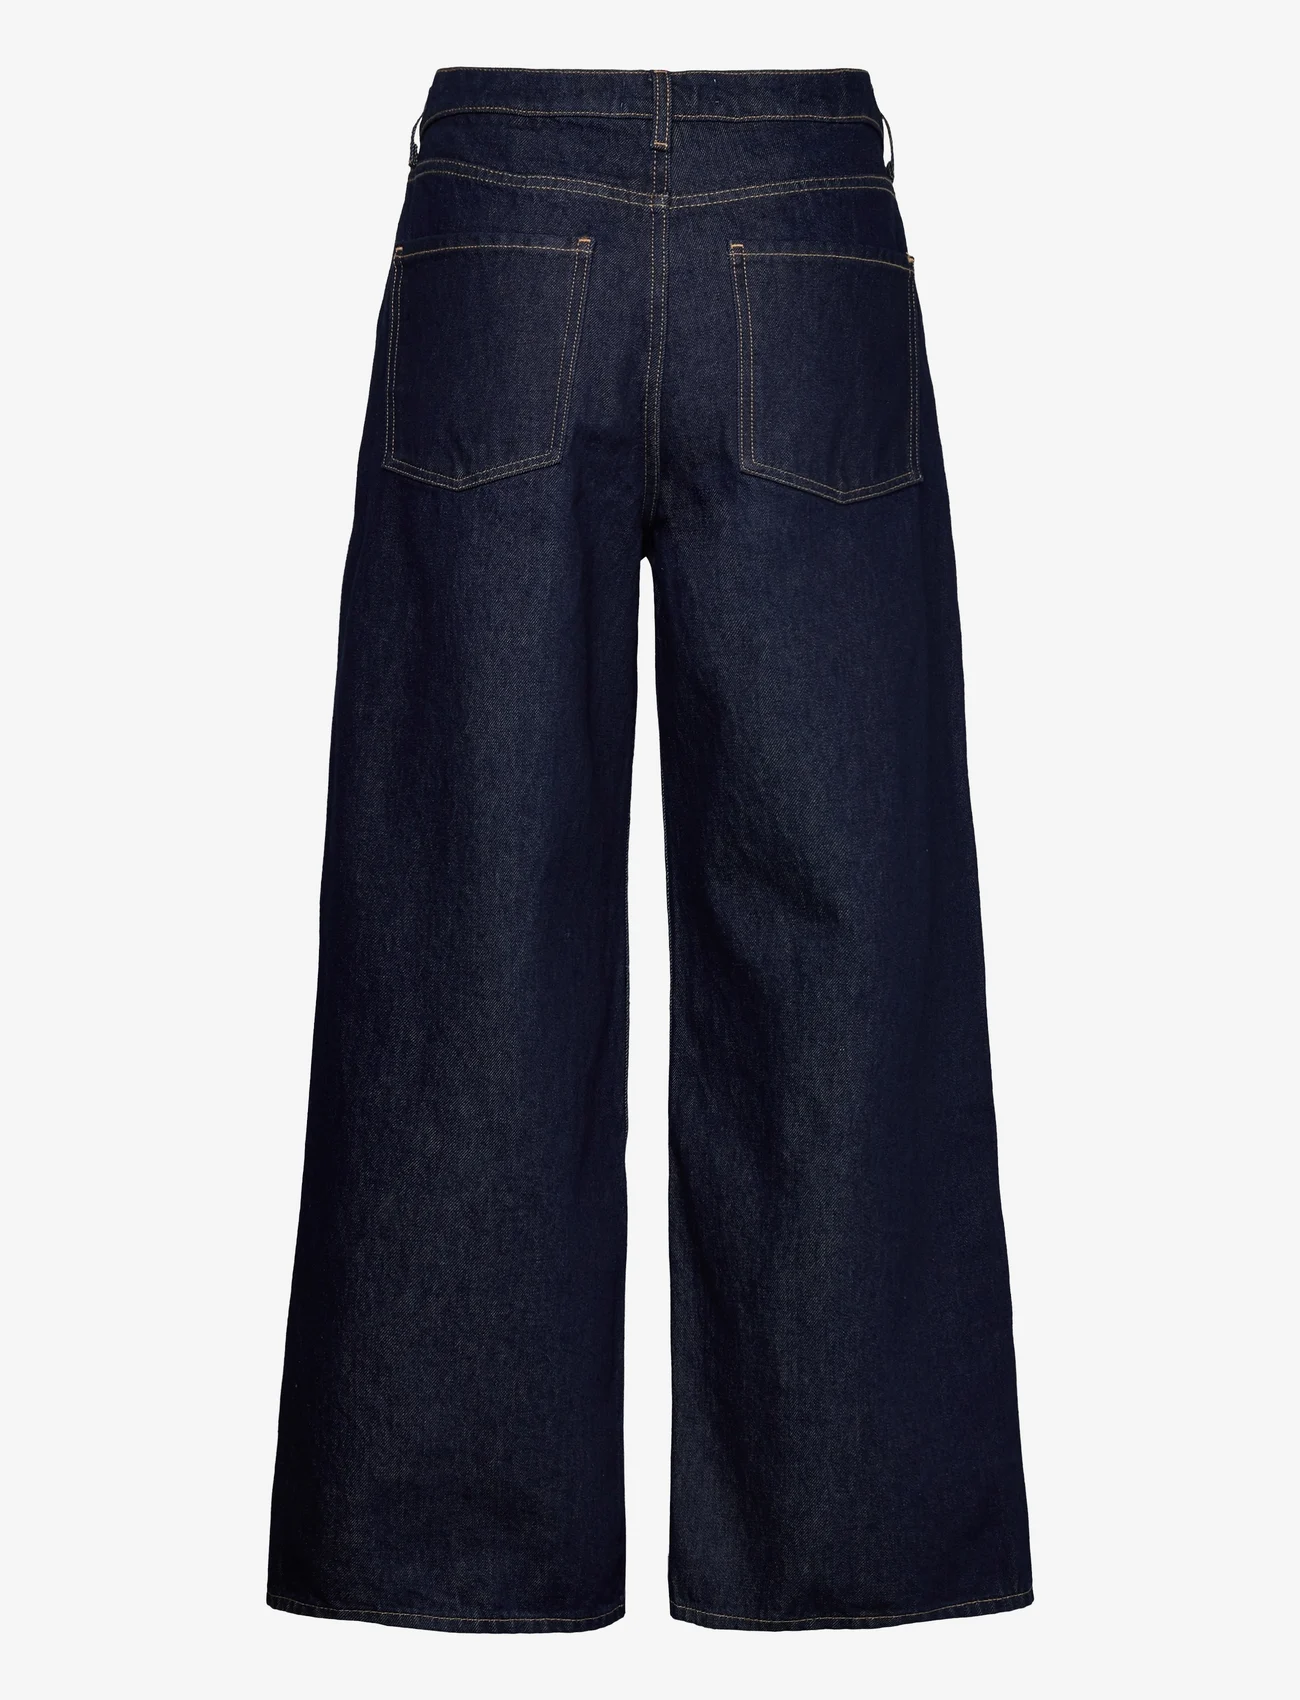 Mango - Low waist wideleg jeans - vida jeans - open blue - 1